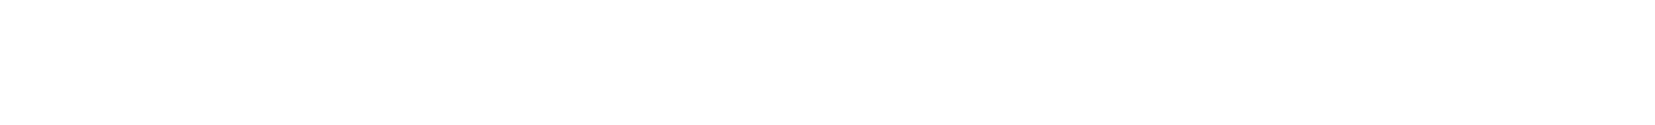 Williams-Sonoma Logo groß für dunkle Hintergründe (transparentes PNG)